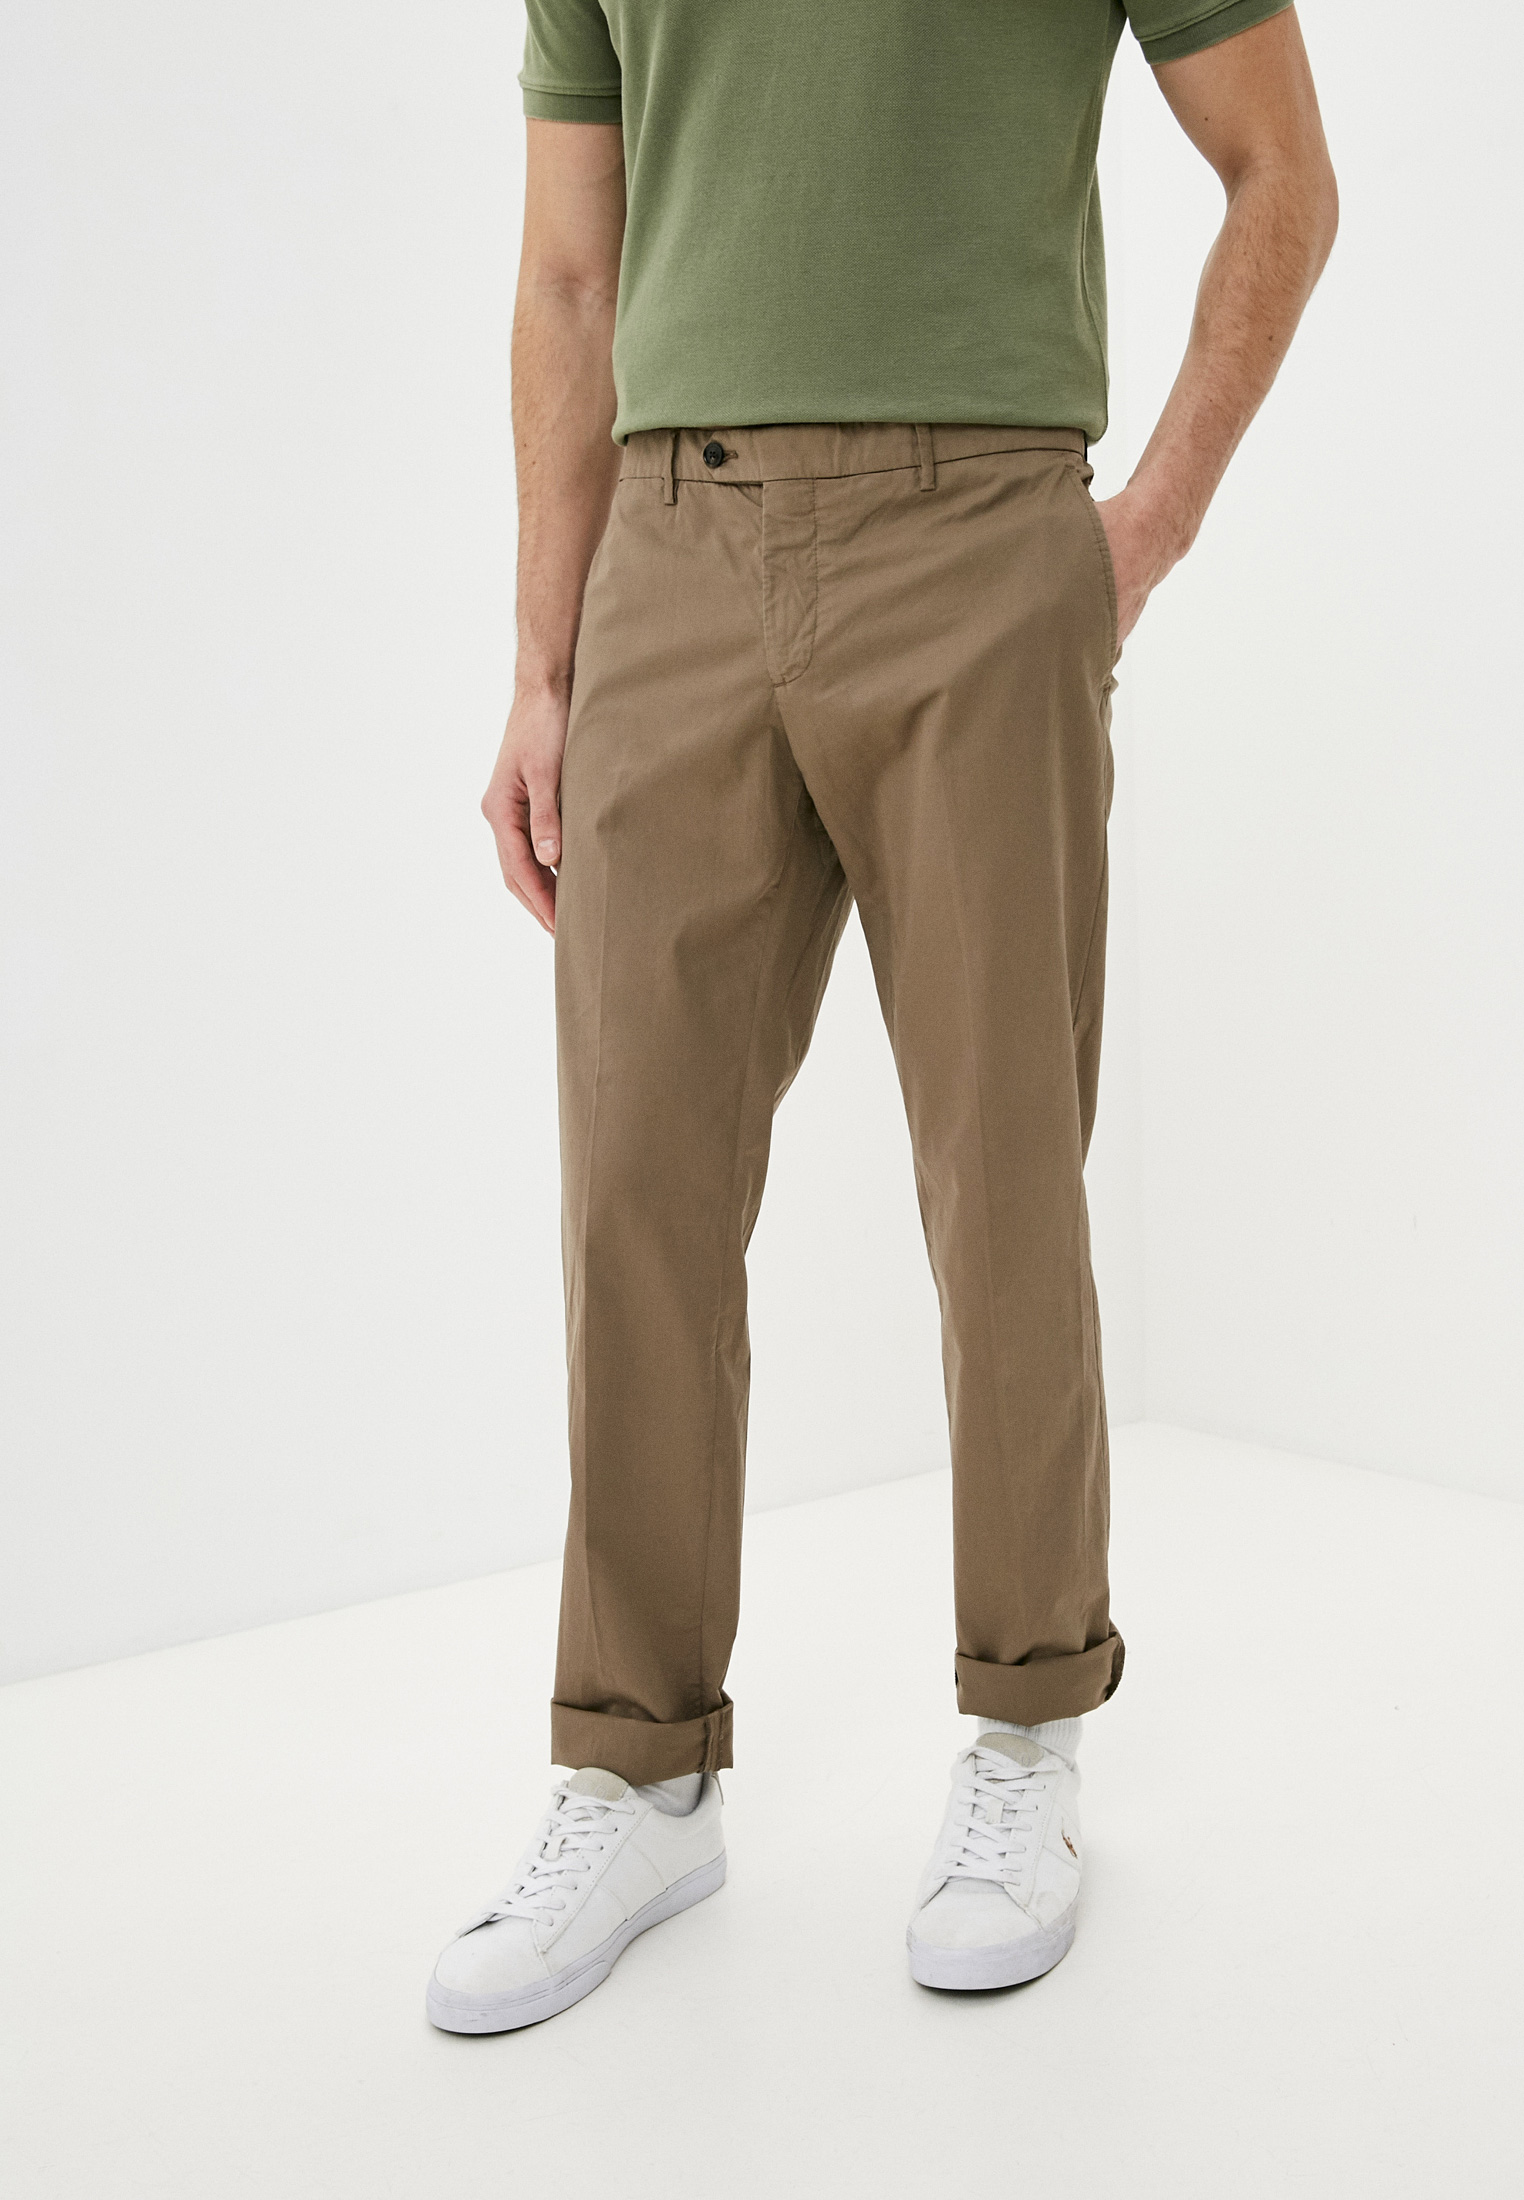 Мужские повседневные брюки Trussardi (Труссарди) 32P00106-1T002853: изображение 1